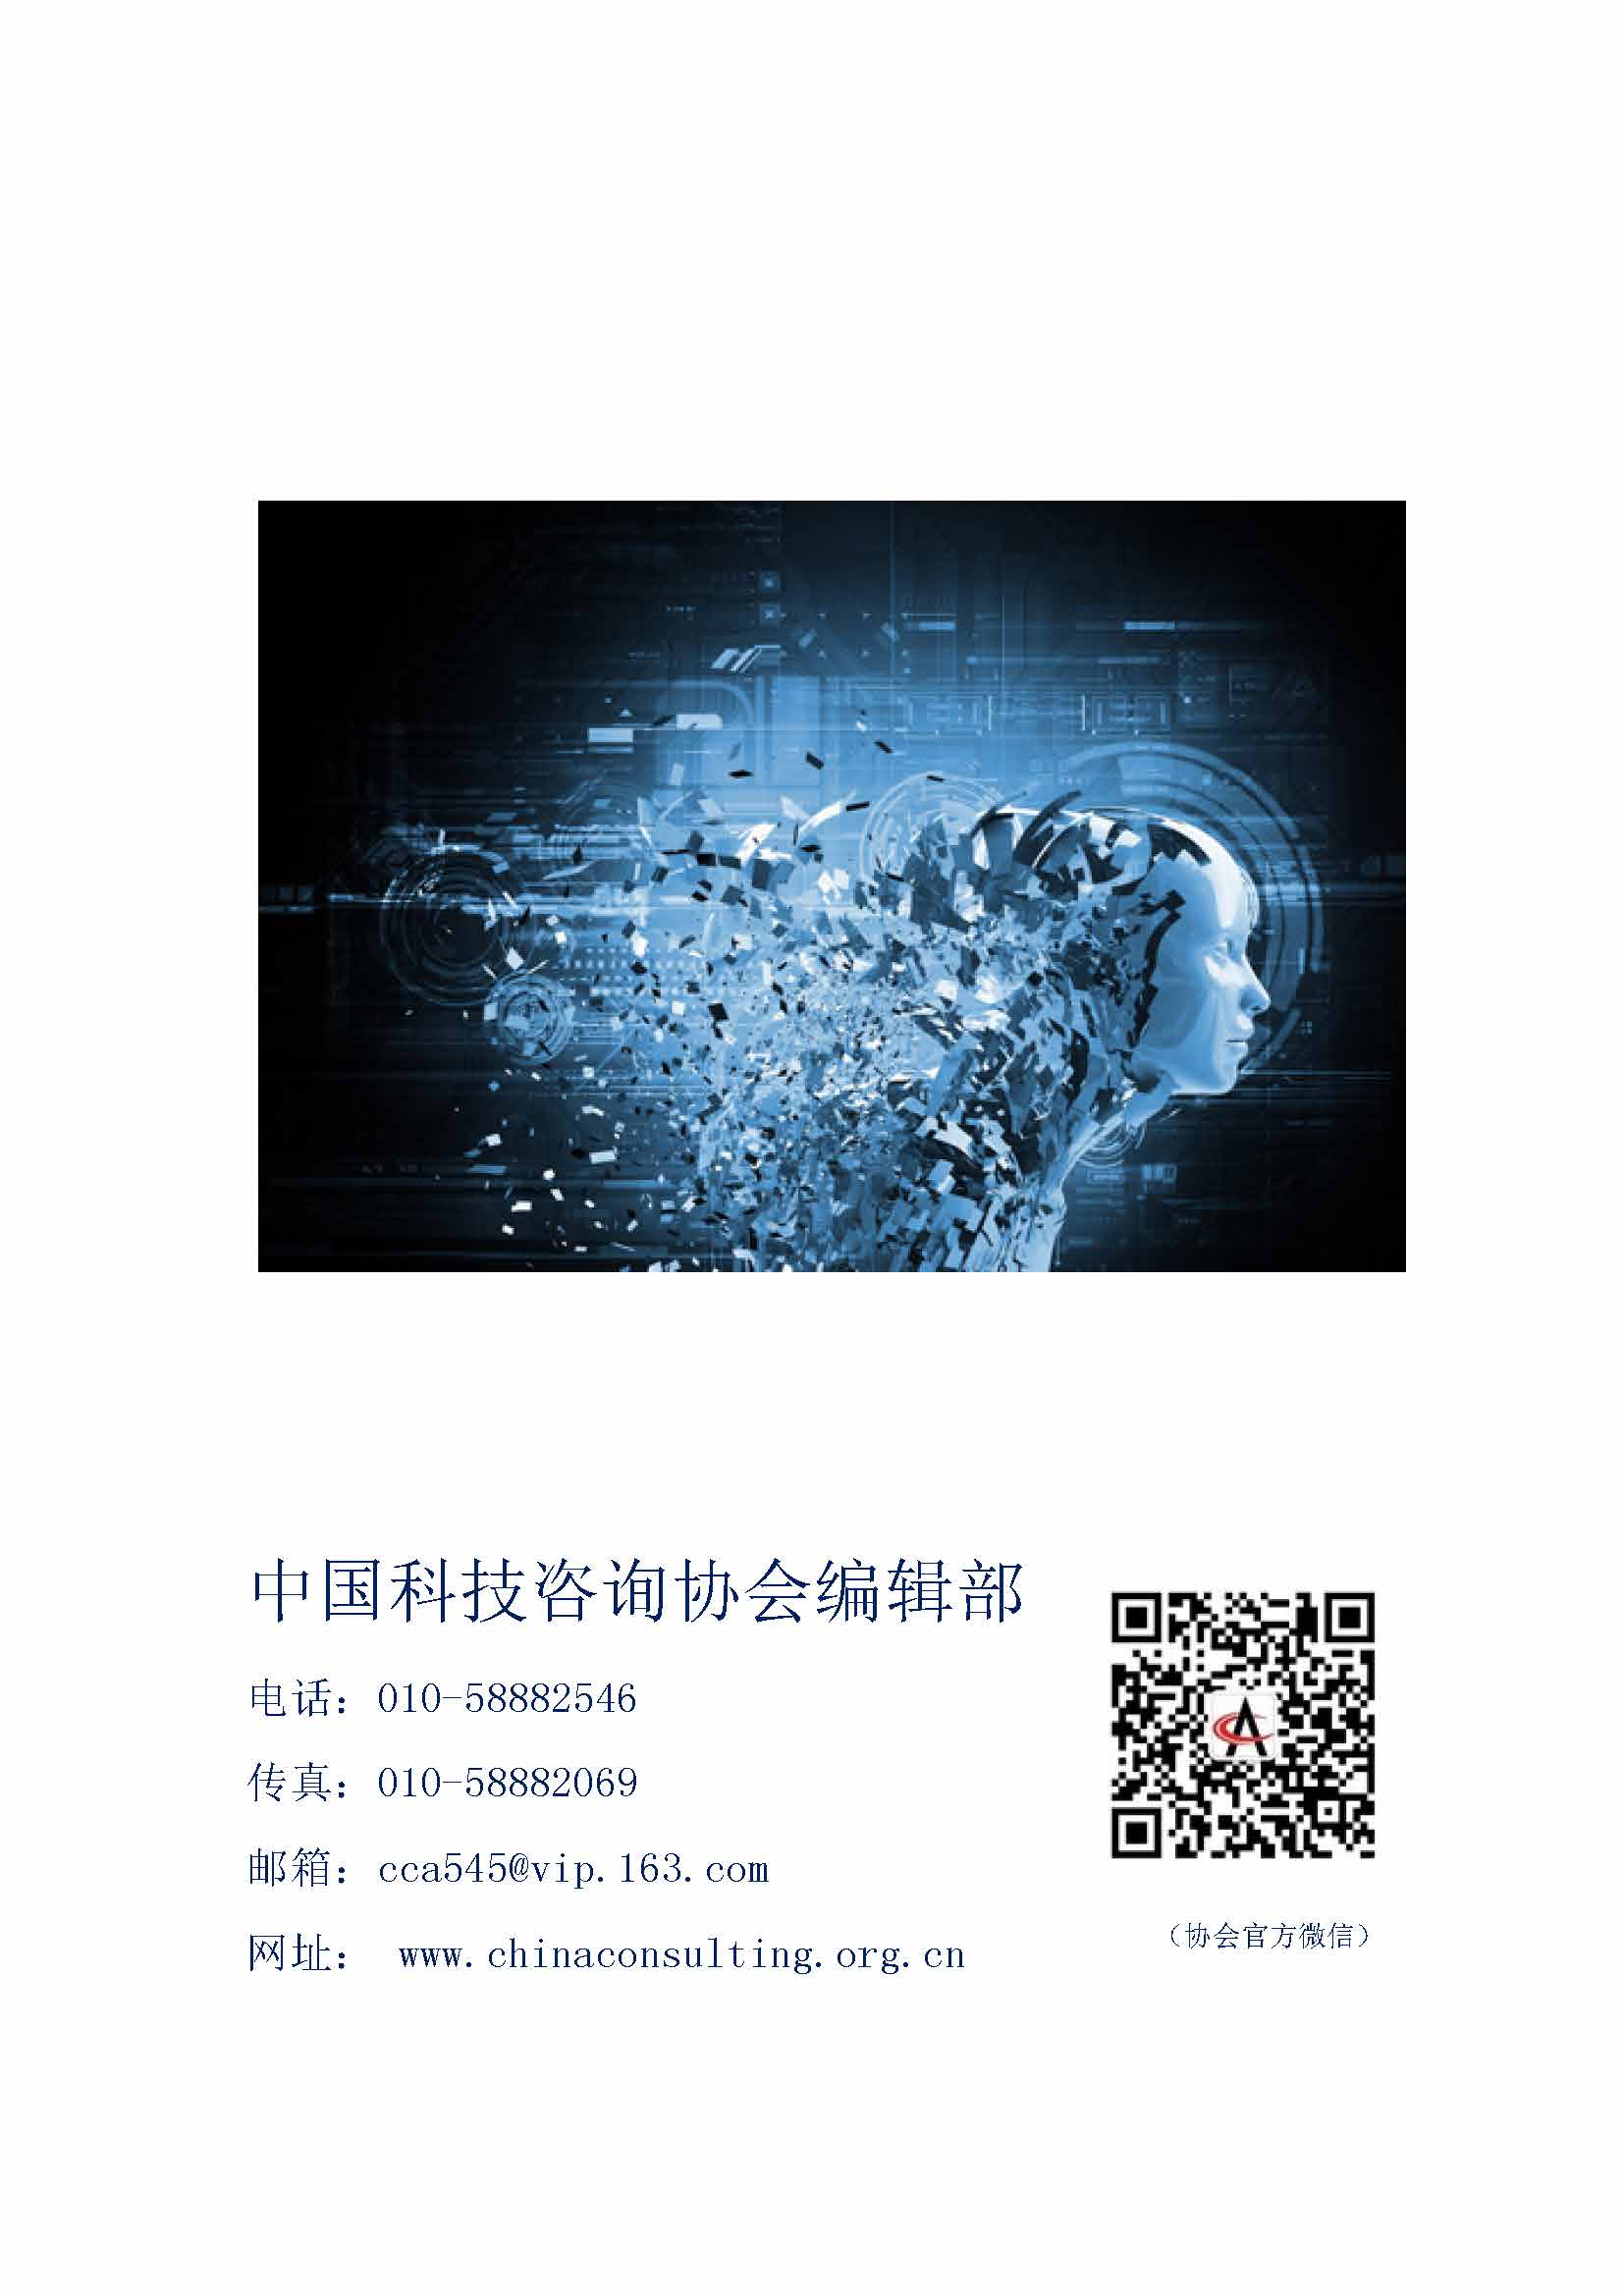 中国科技咨询协会国际快讯（第三十期）_页面_10.jpg